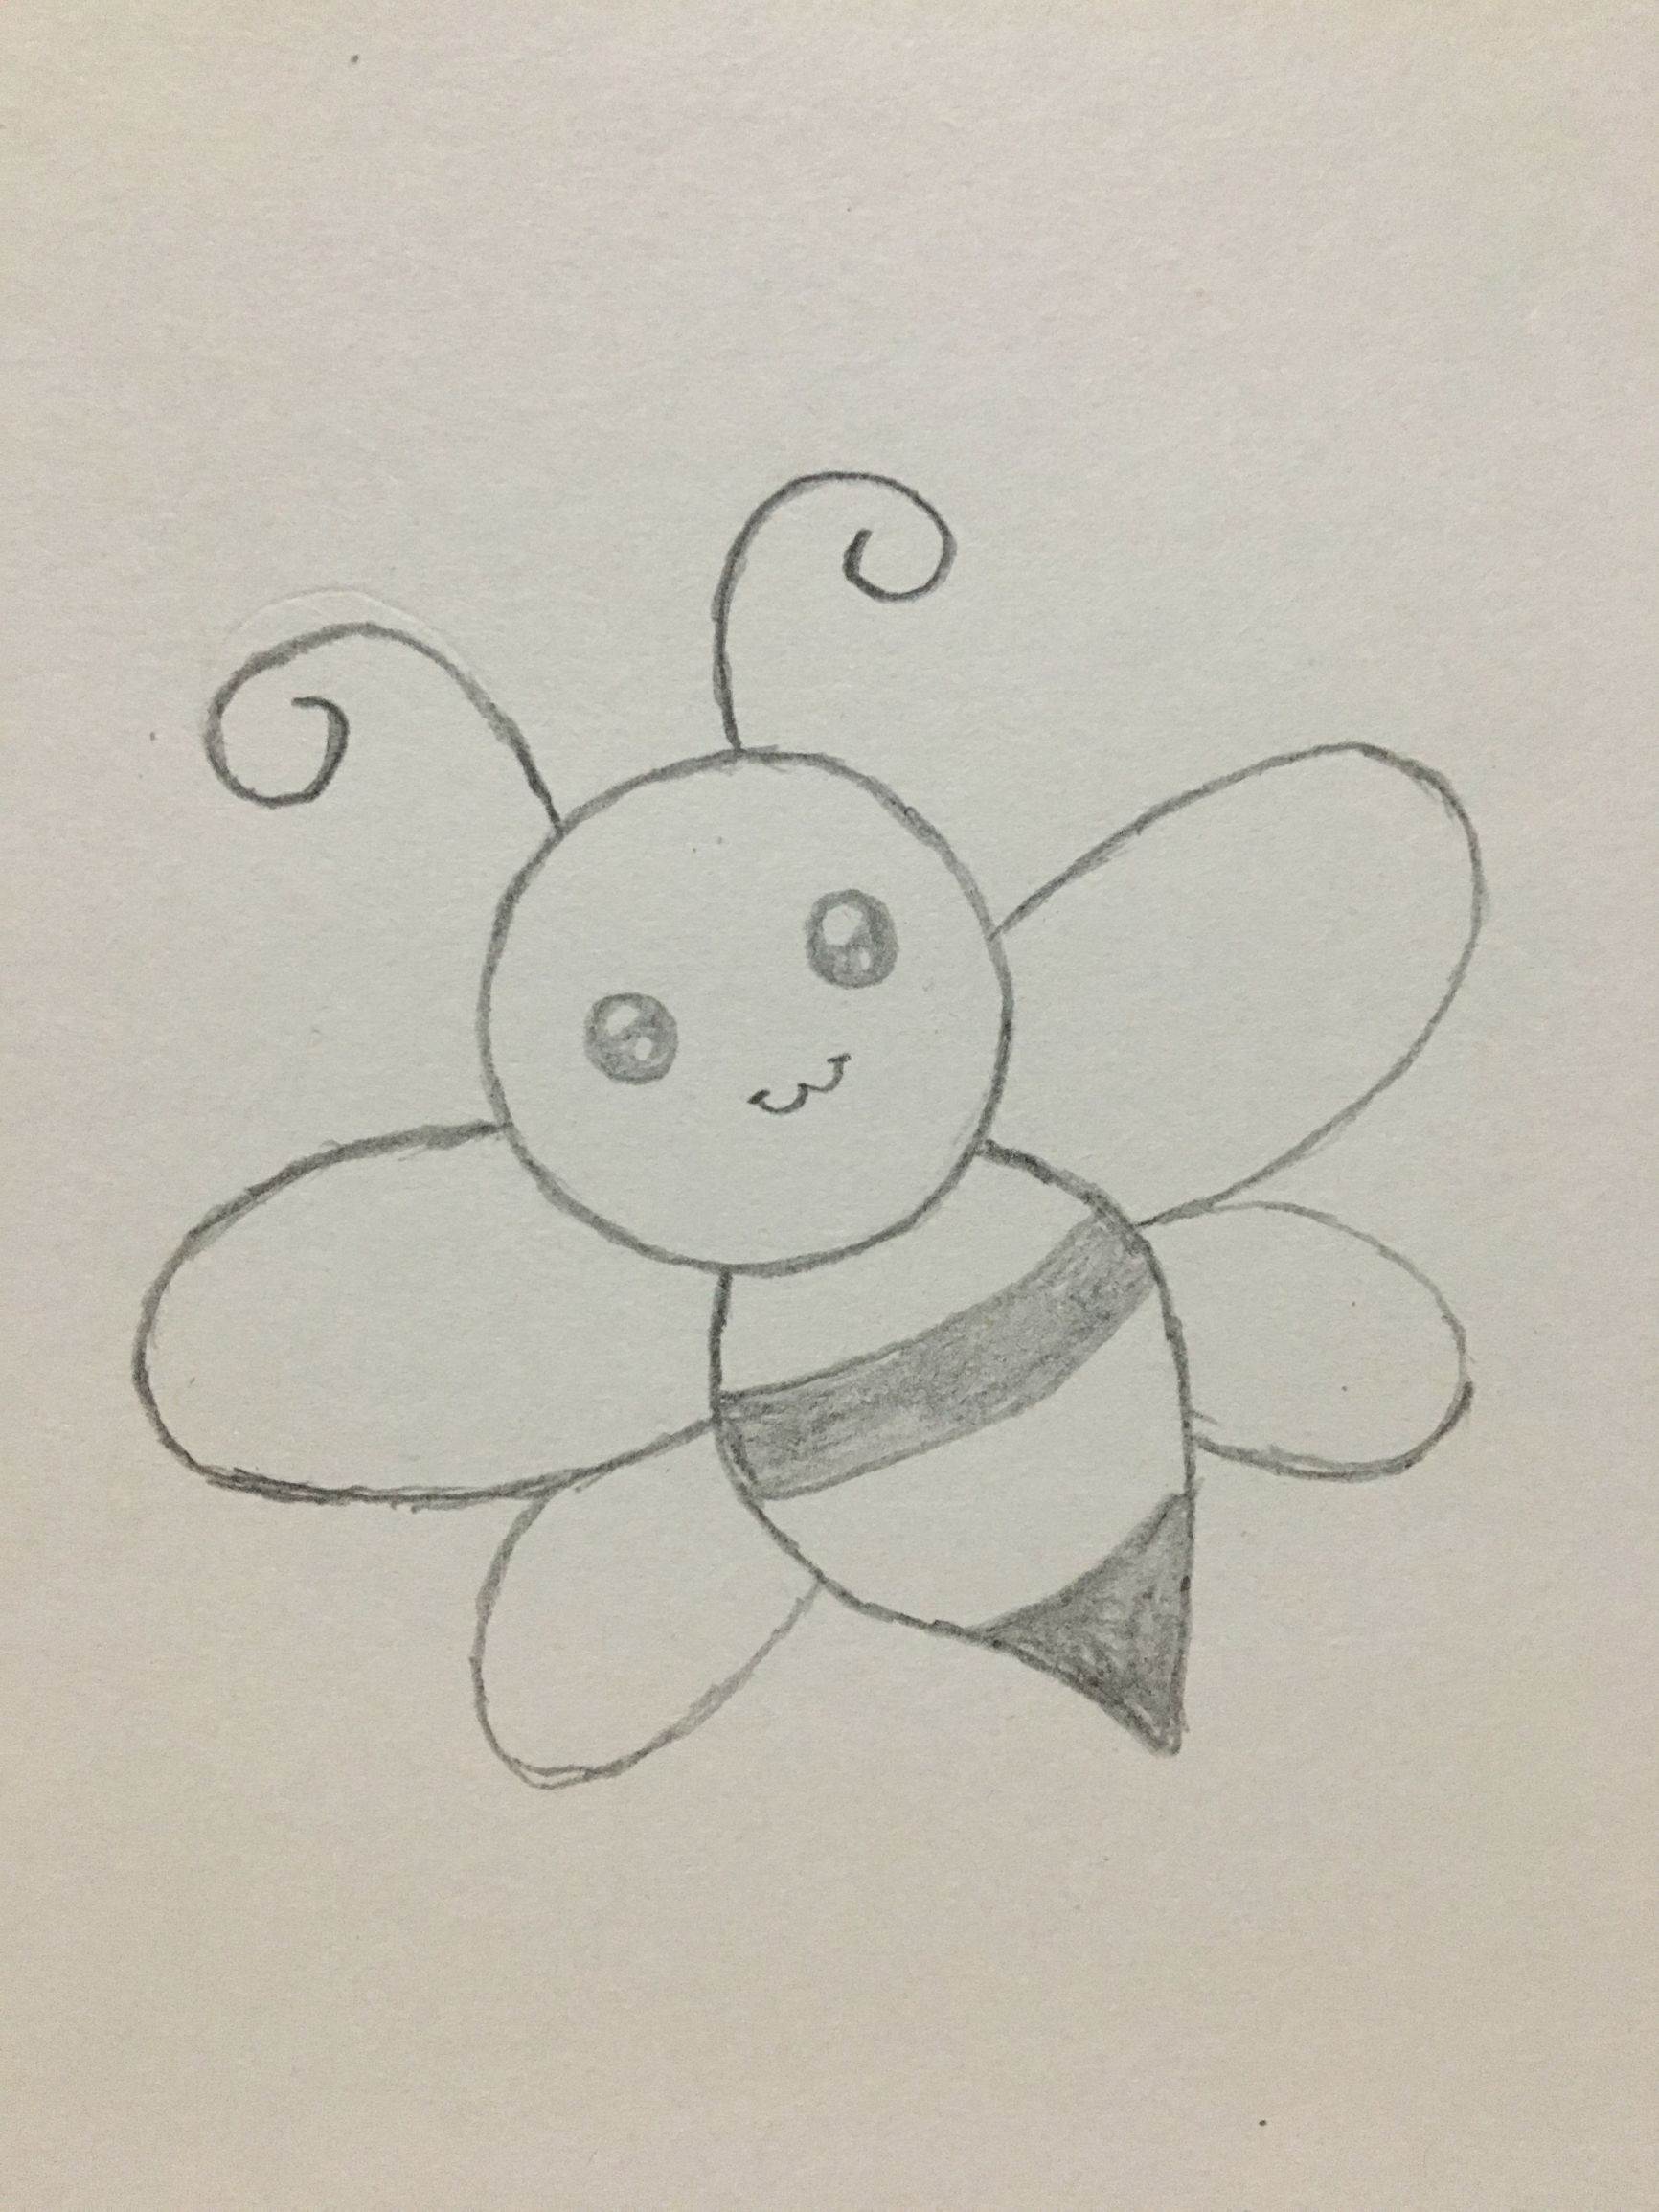 蜜蜂结构简笔画图片